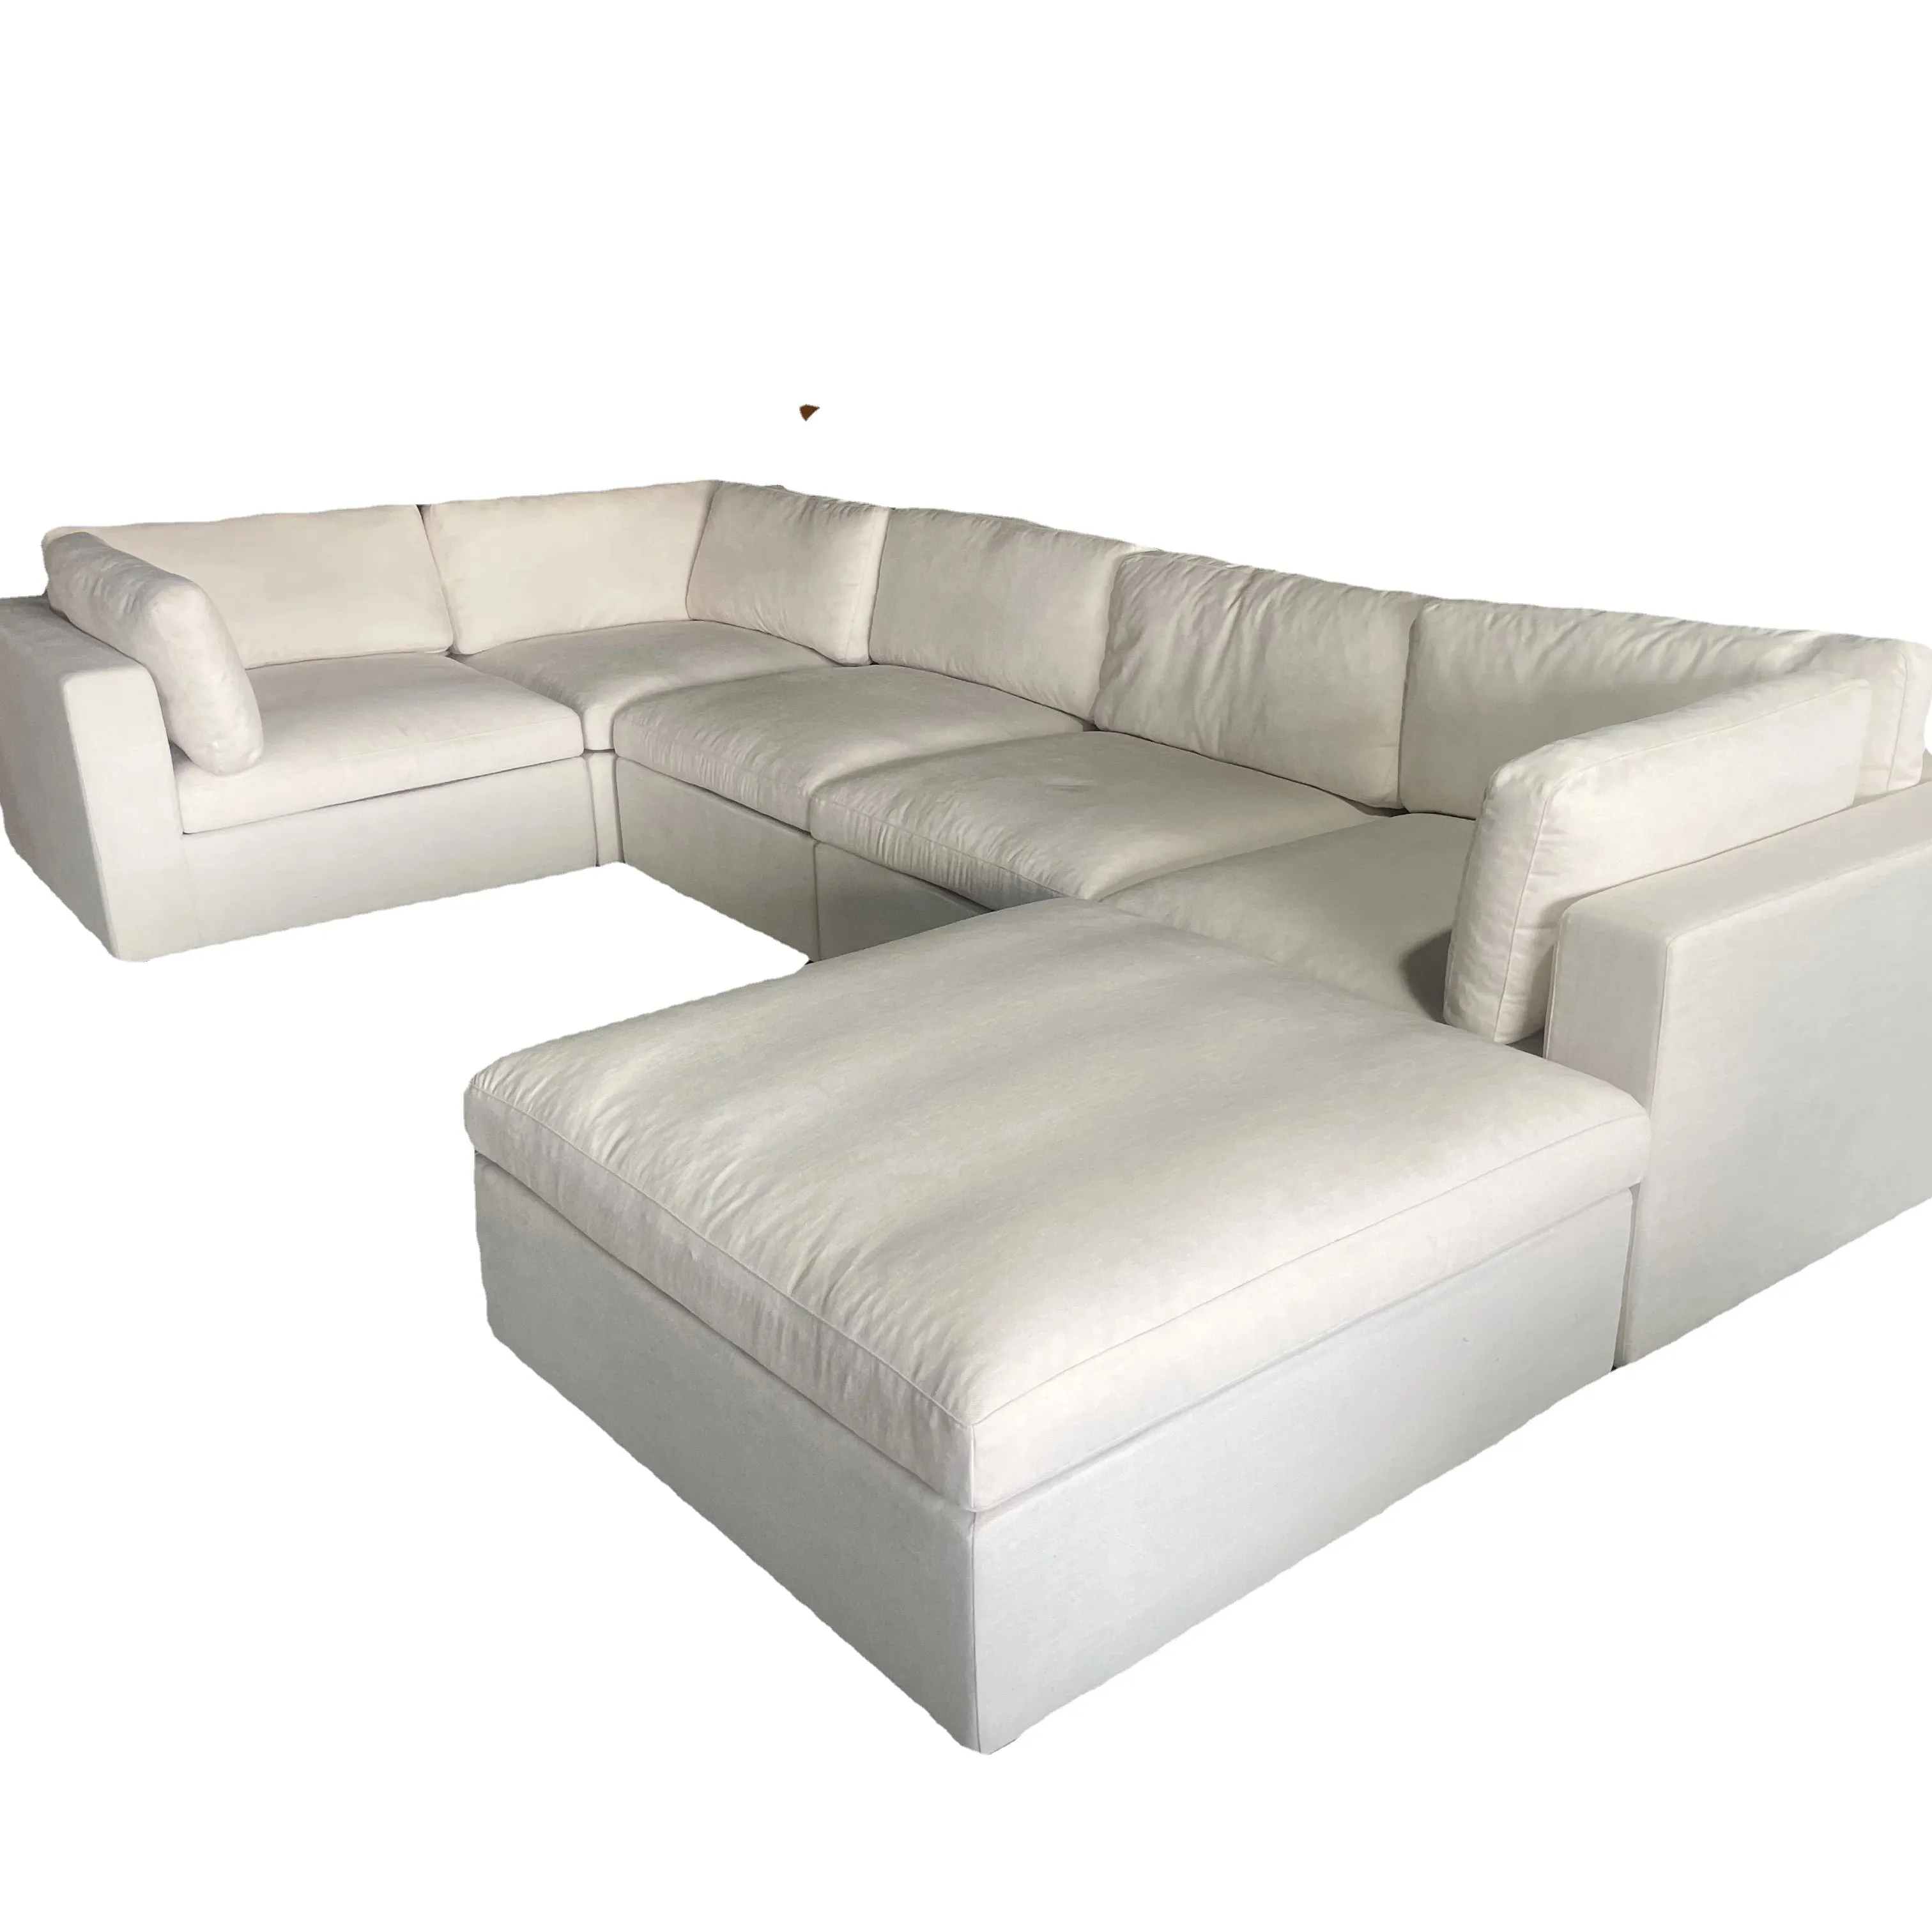 أريكة عصرية فاخرة بيضاء لأسفل على شكل U أريكة سحابية مقطعية